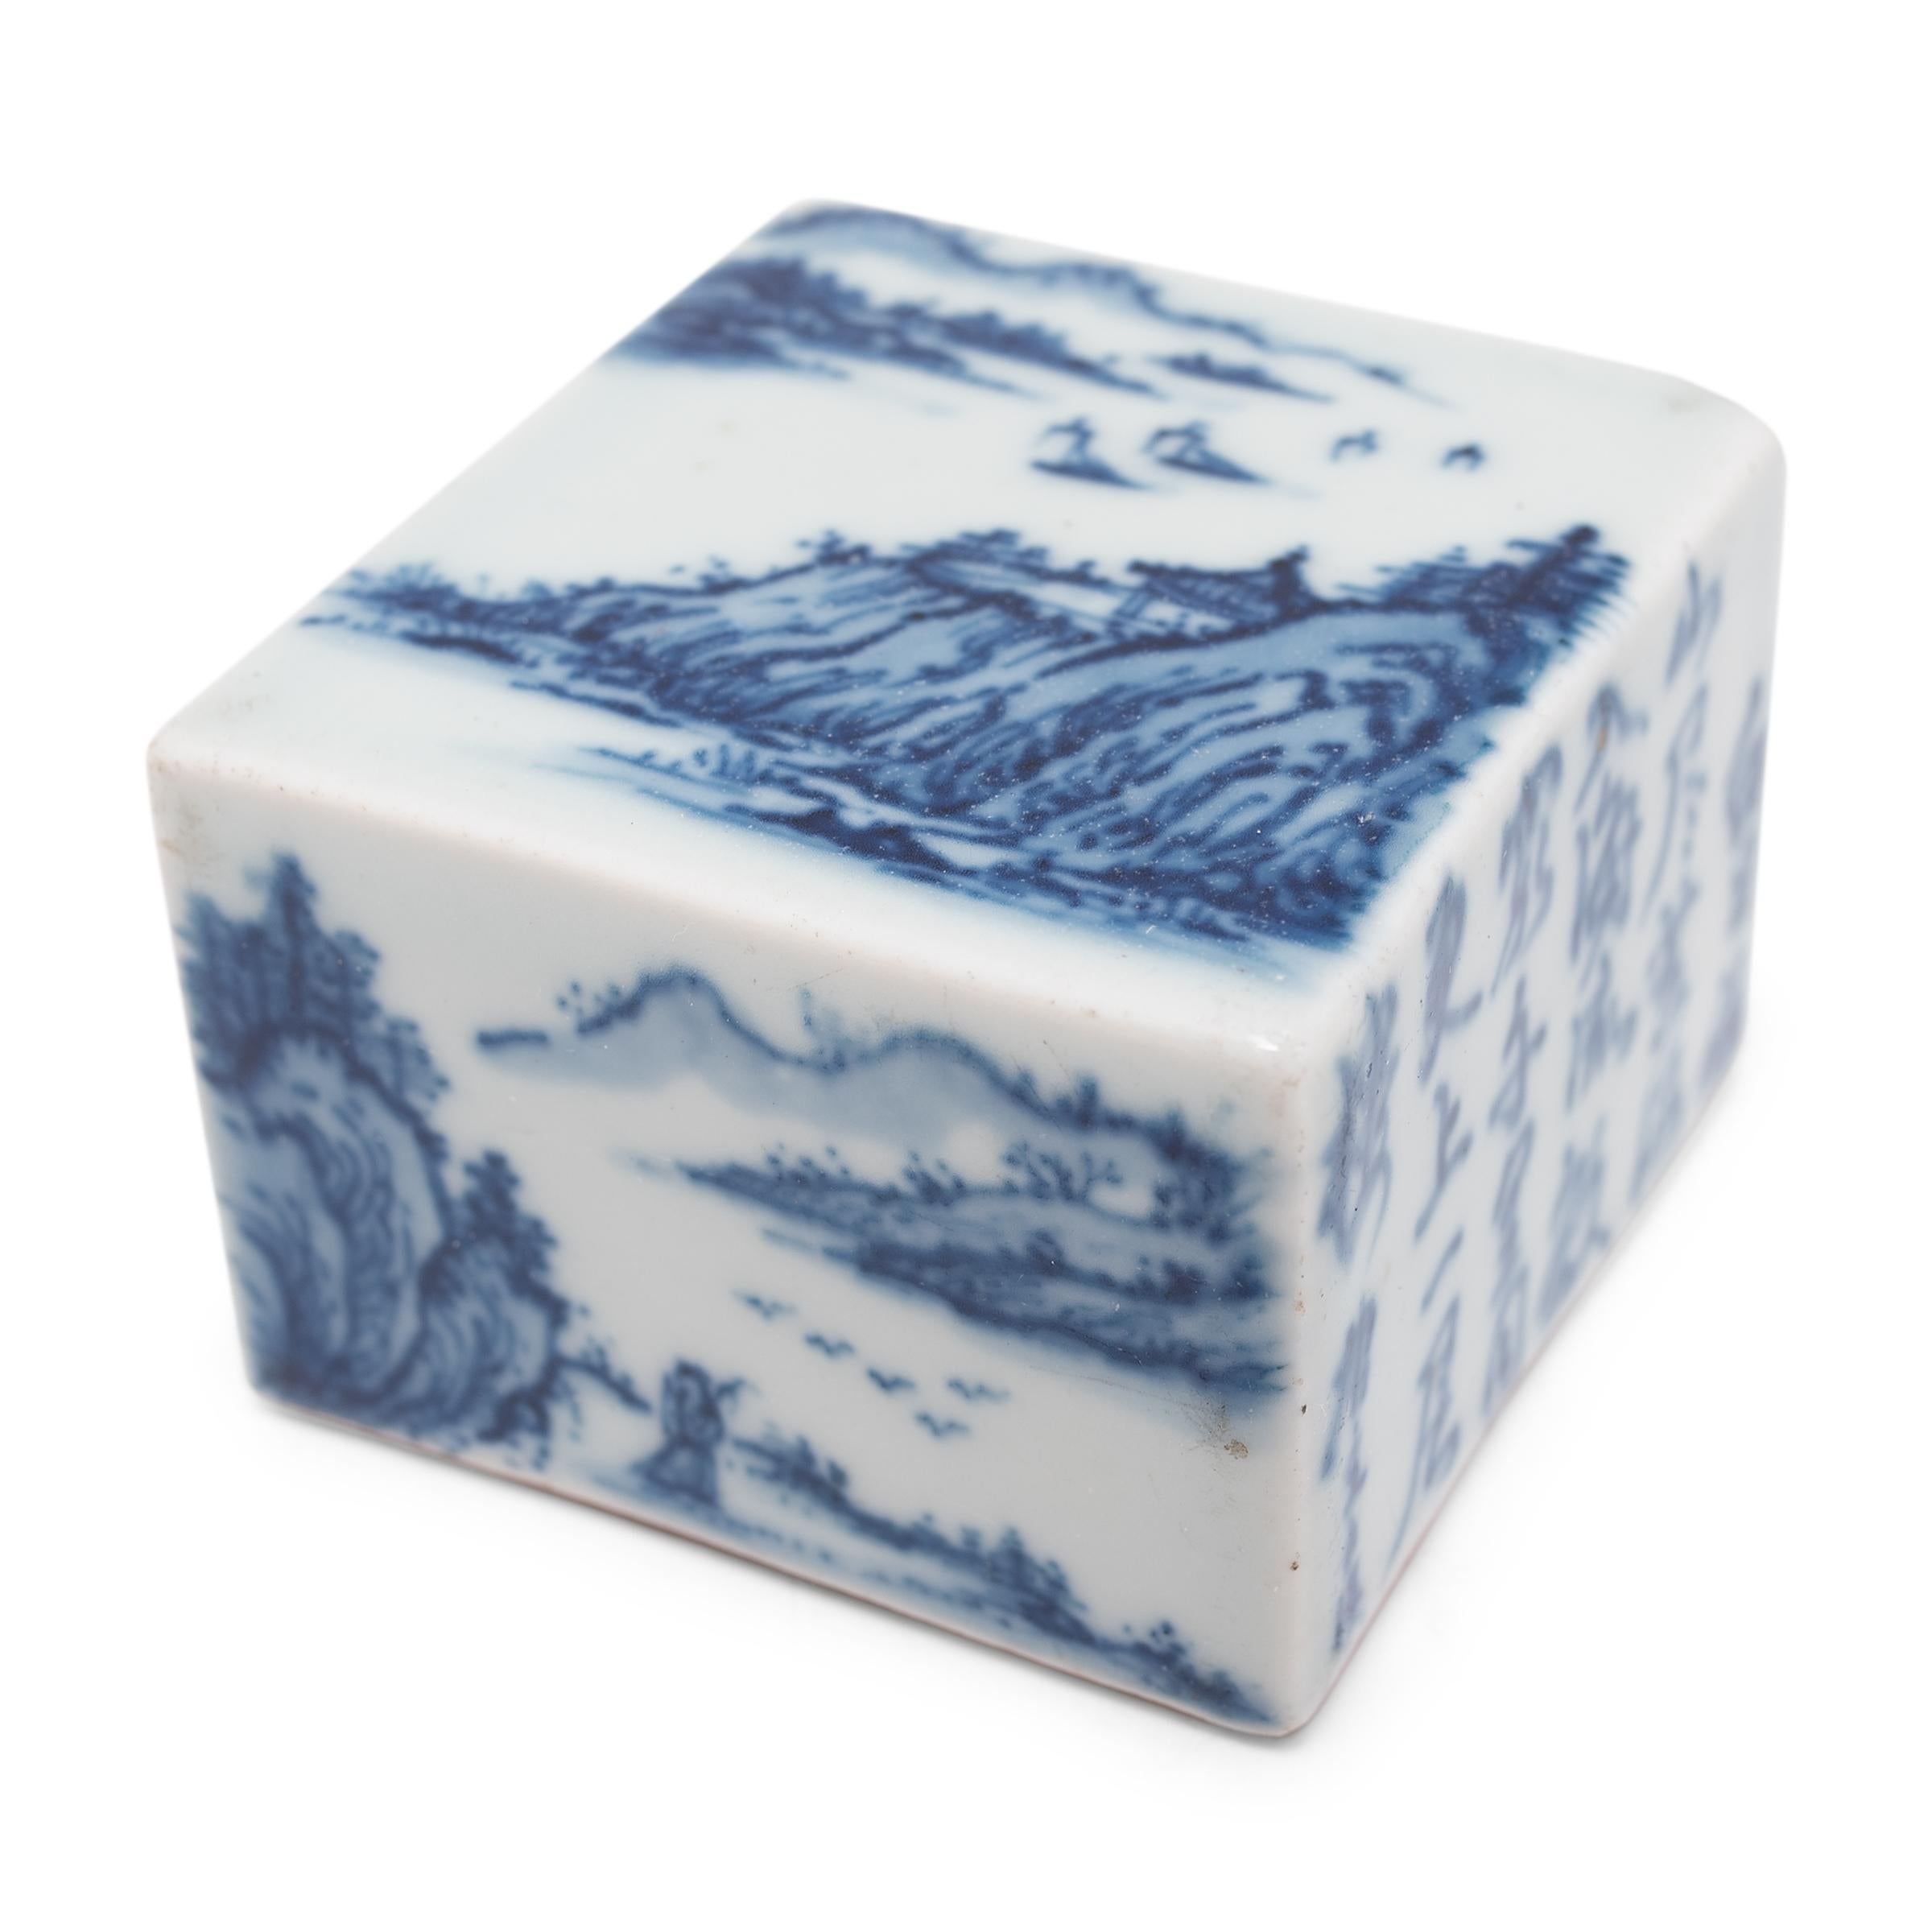 Ce petit bloc de porcelaine recrée les sceaux personnalisés utilisés pour signer des documents importants sous les dynasties Ming et Qing. Également appelés 